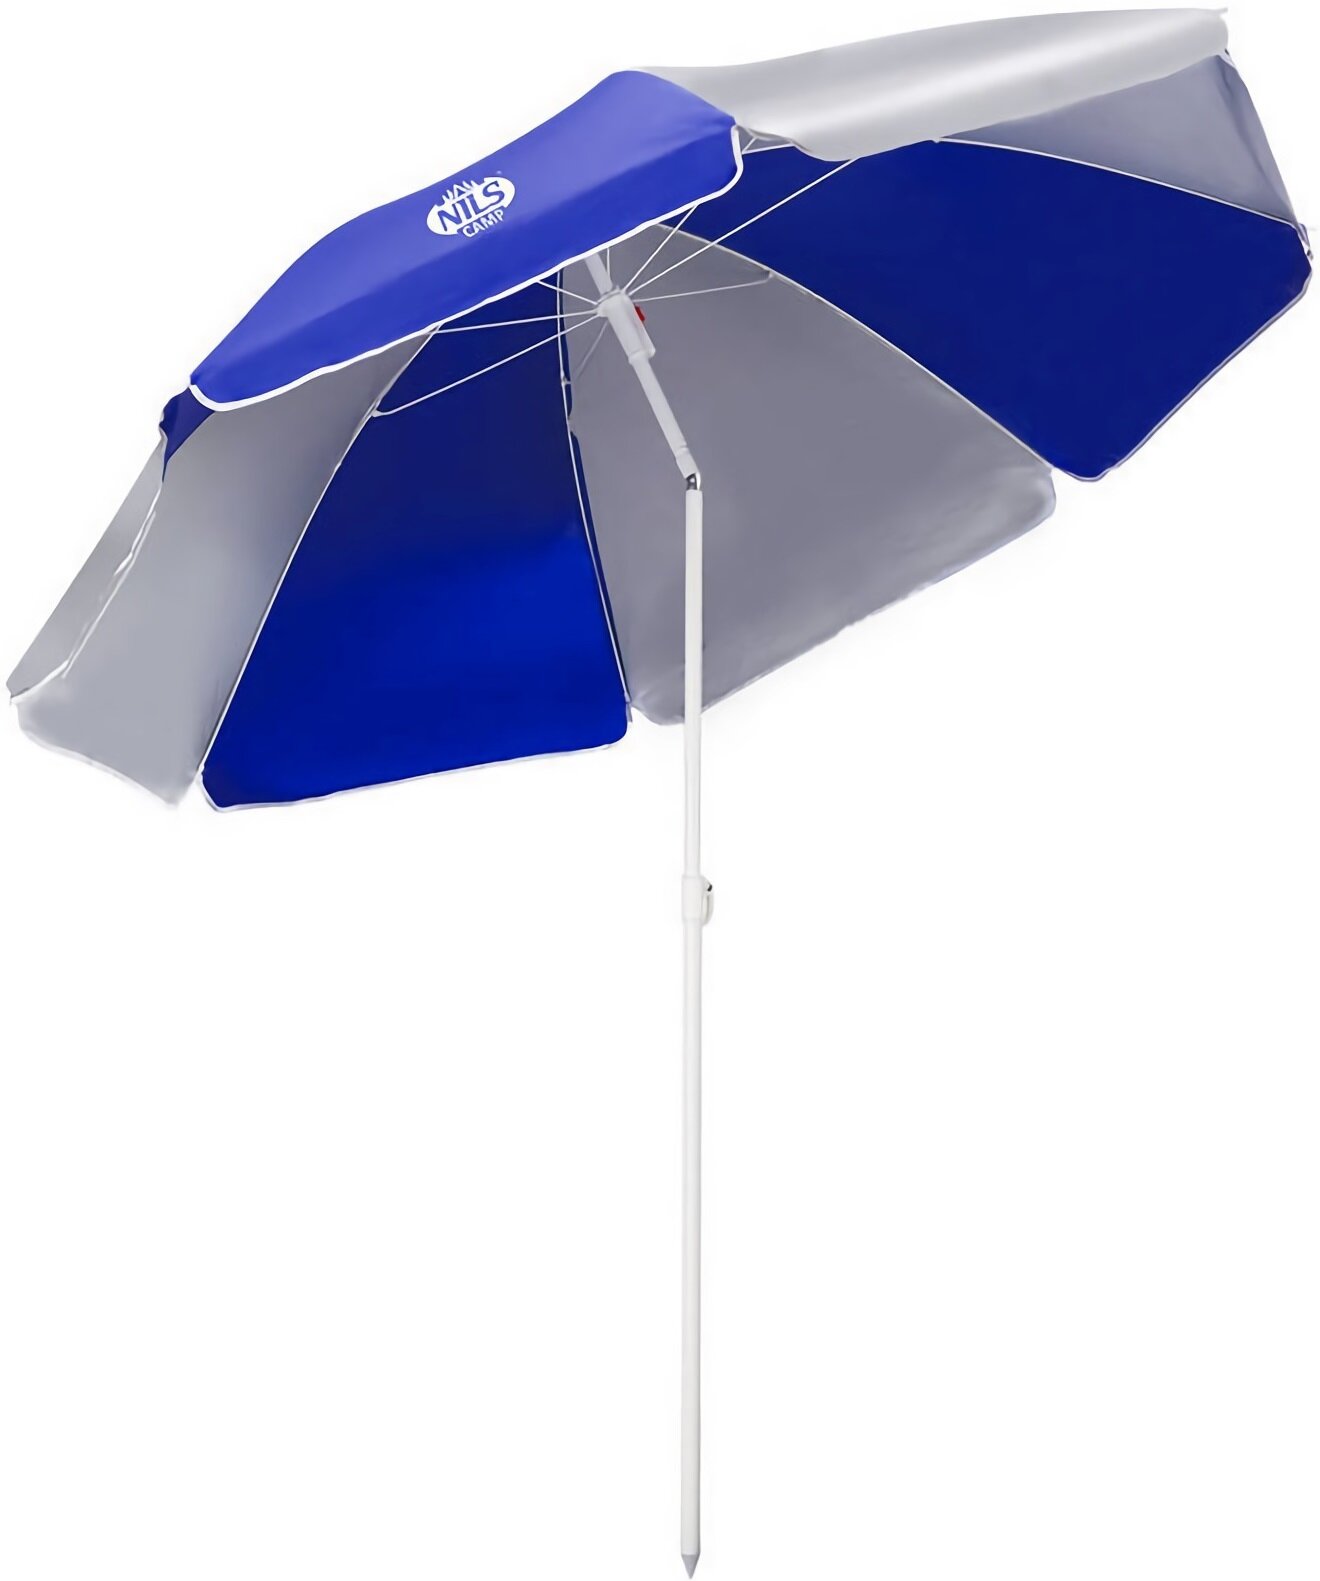 NILS CAMP NC7813 180 cm Biało-niebieski Parasol plażowy - niskie ceny i  opinie w Media Expert